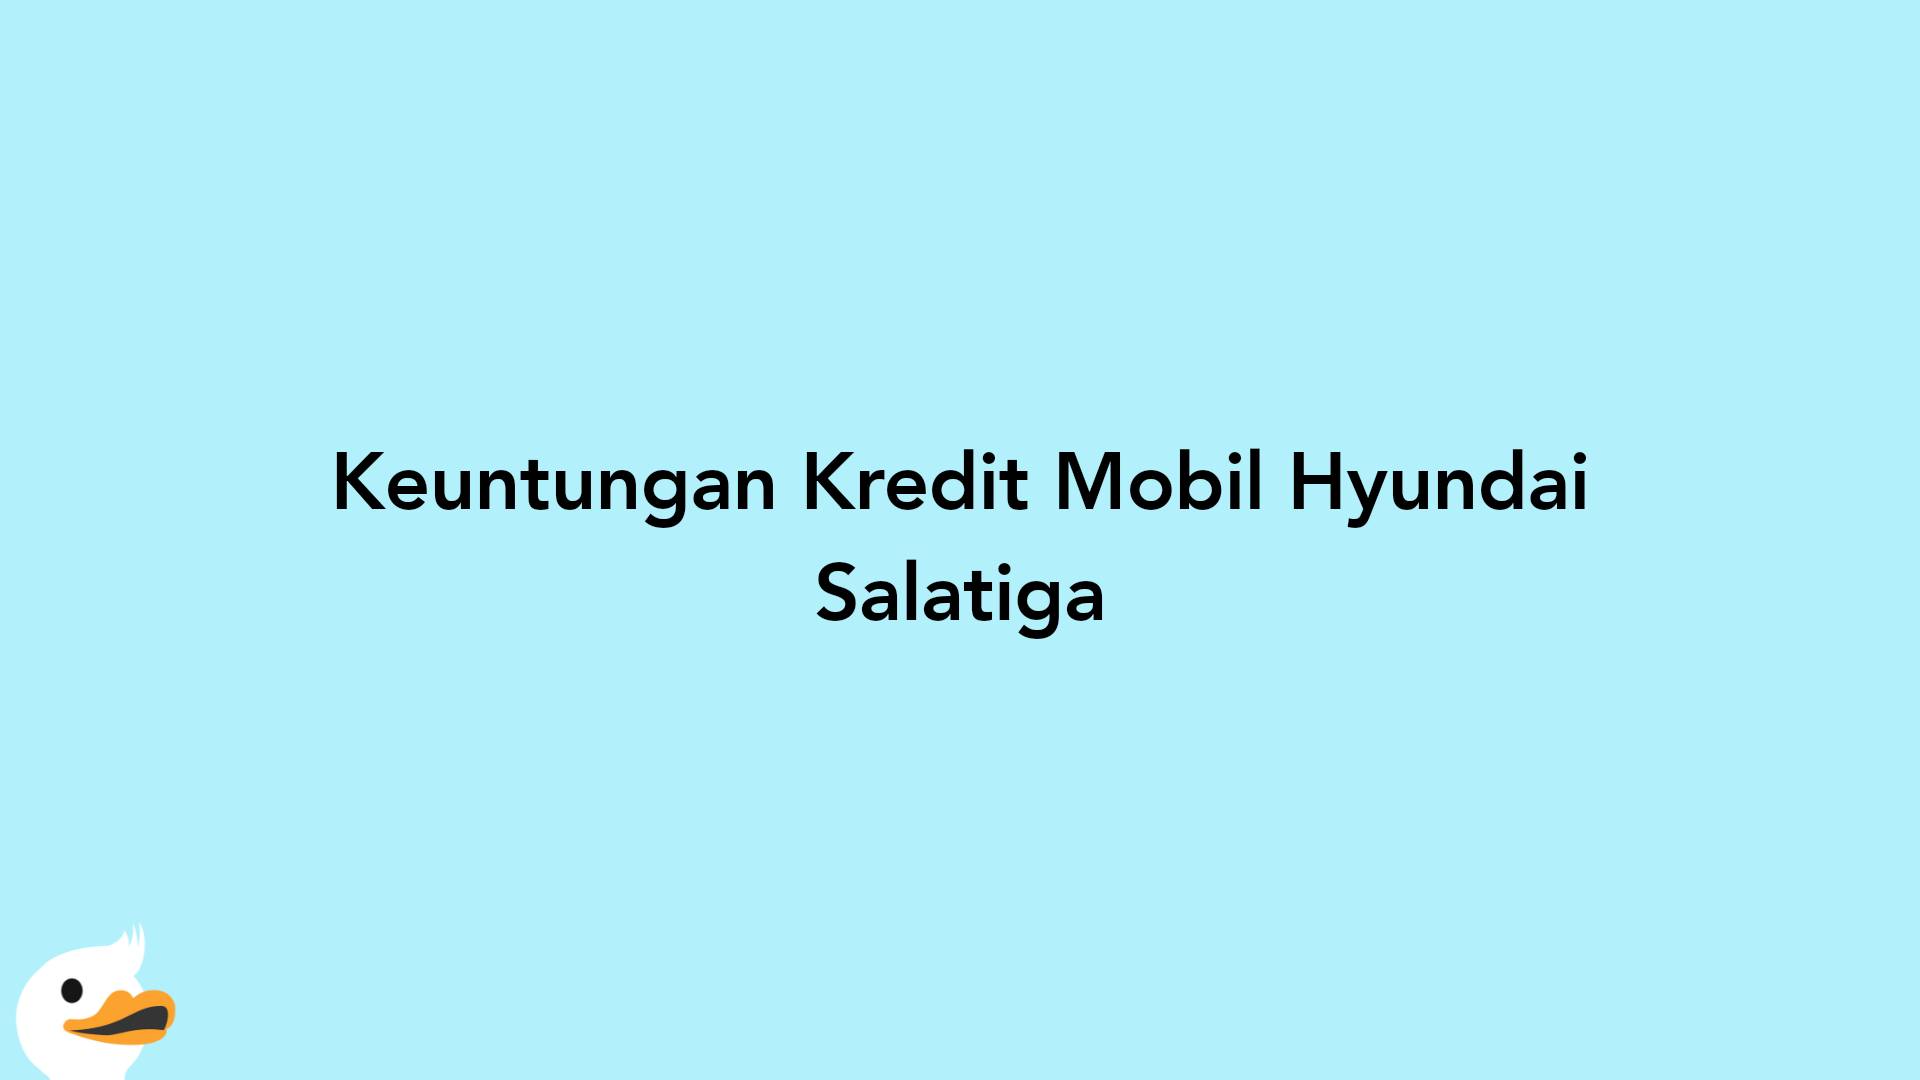 Keuntungan Kredit Mobil Hyundai Salatiga